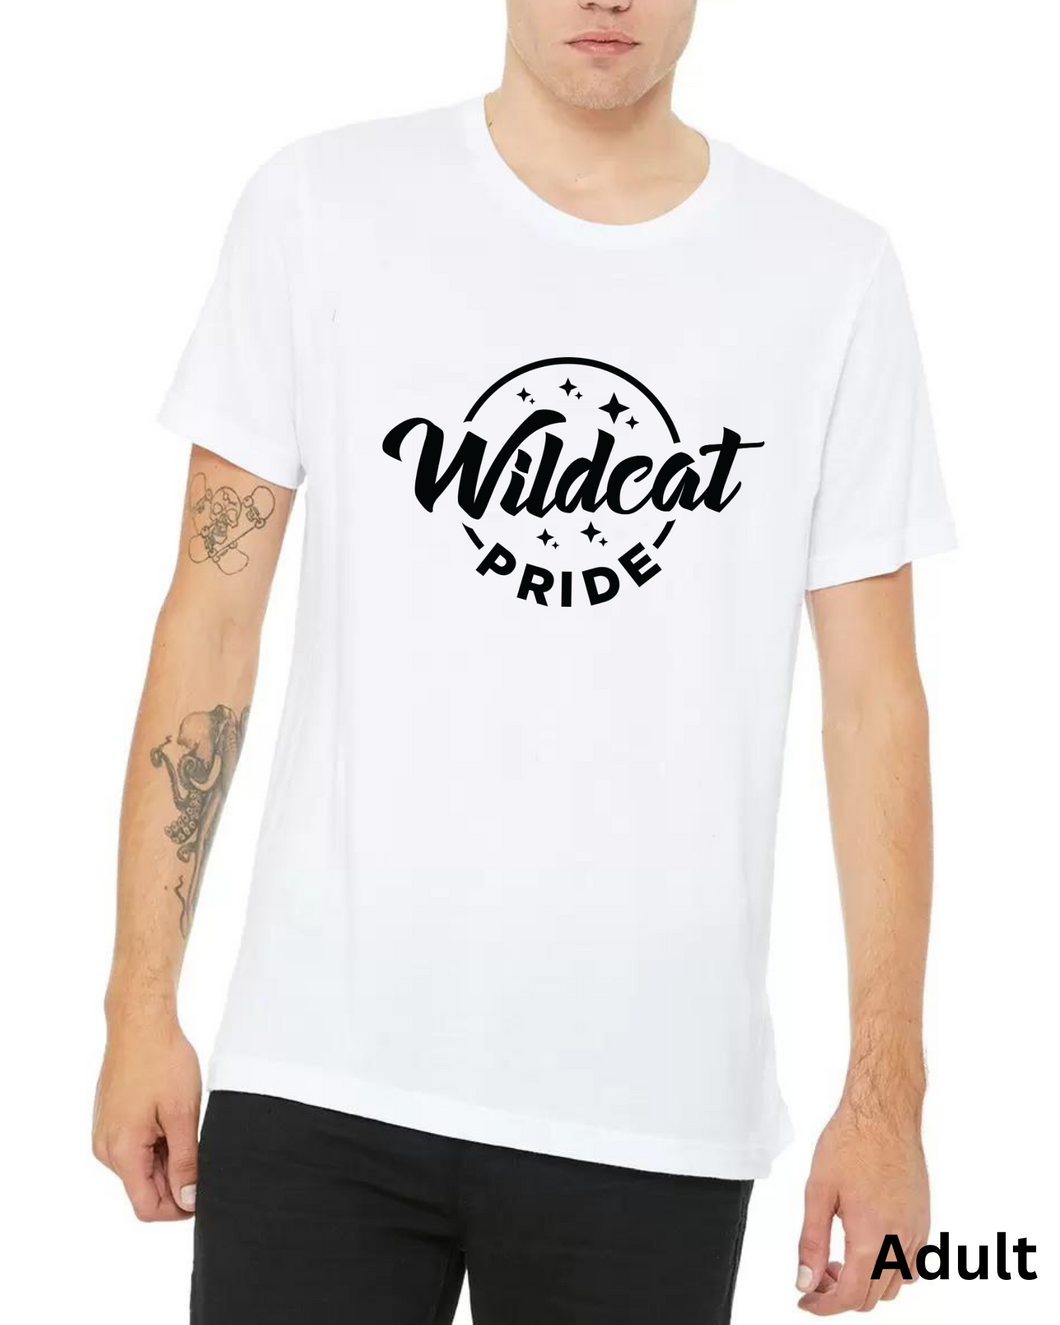 wildcat pride adult tee